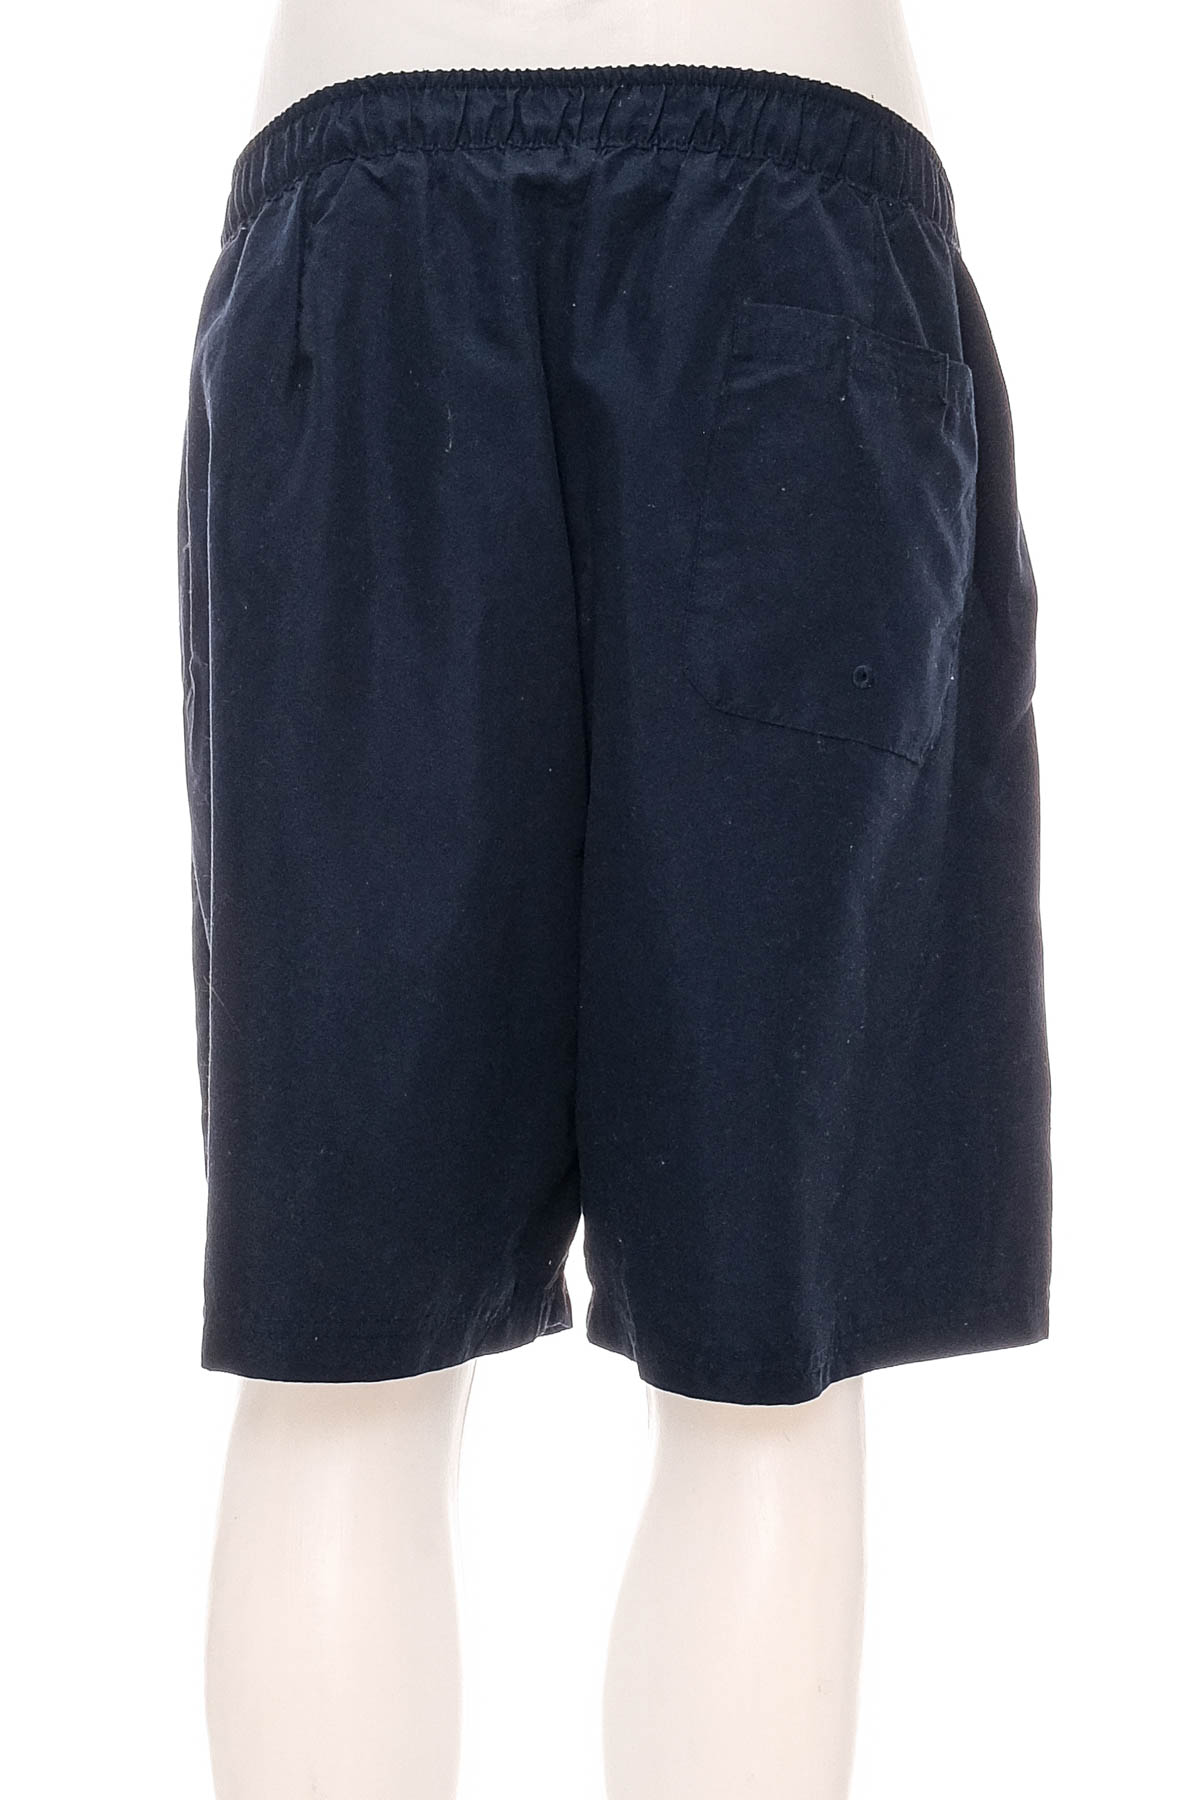 Men's shorts - Mistral - 1